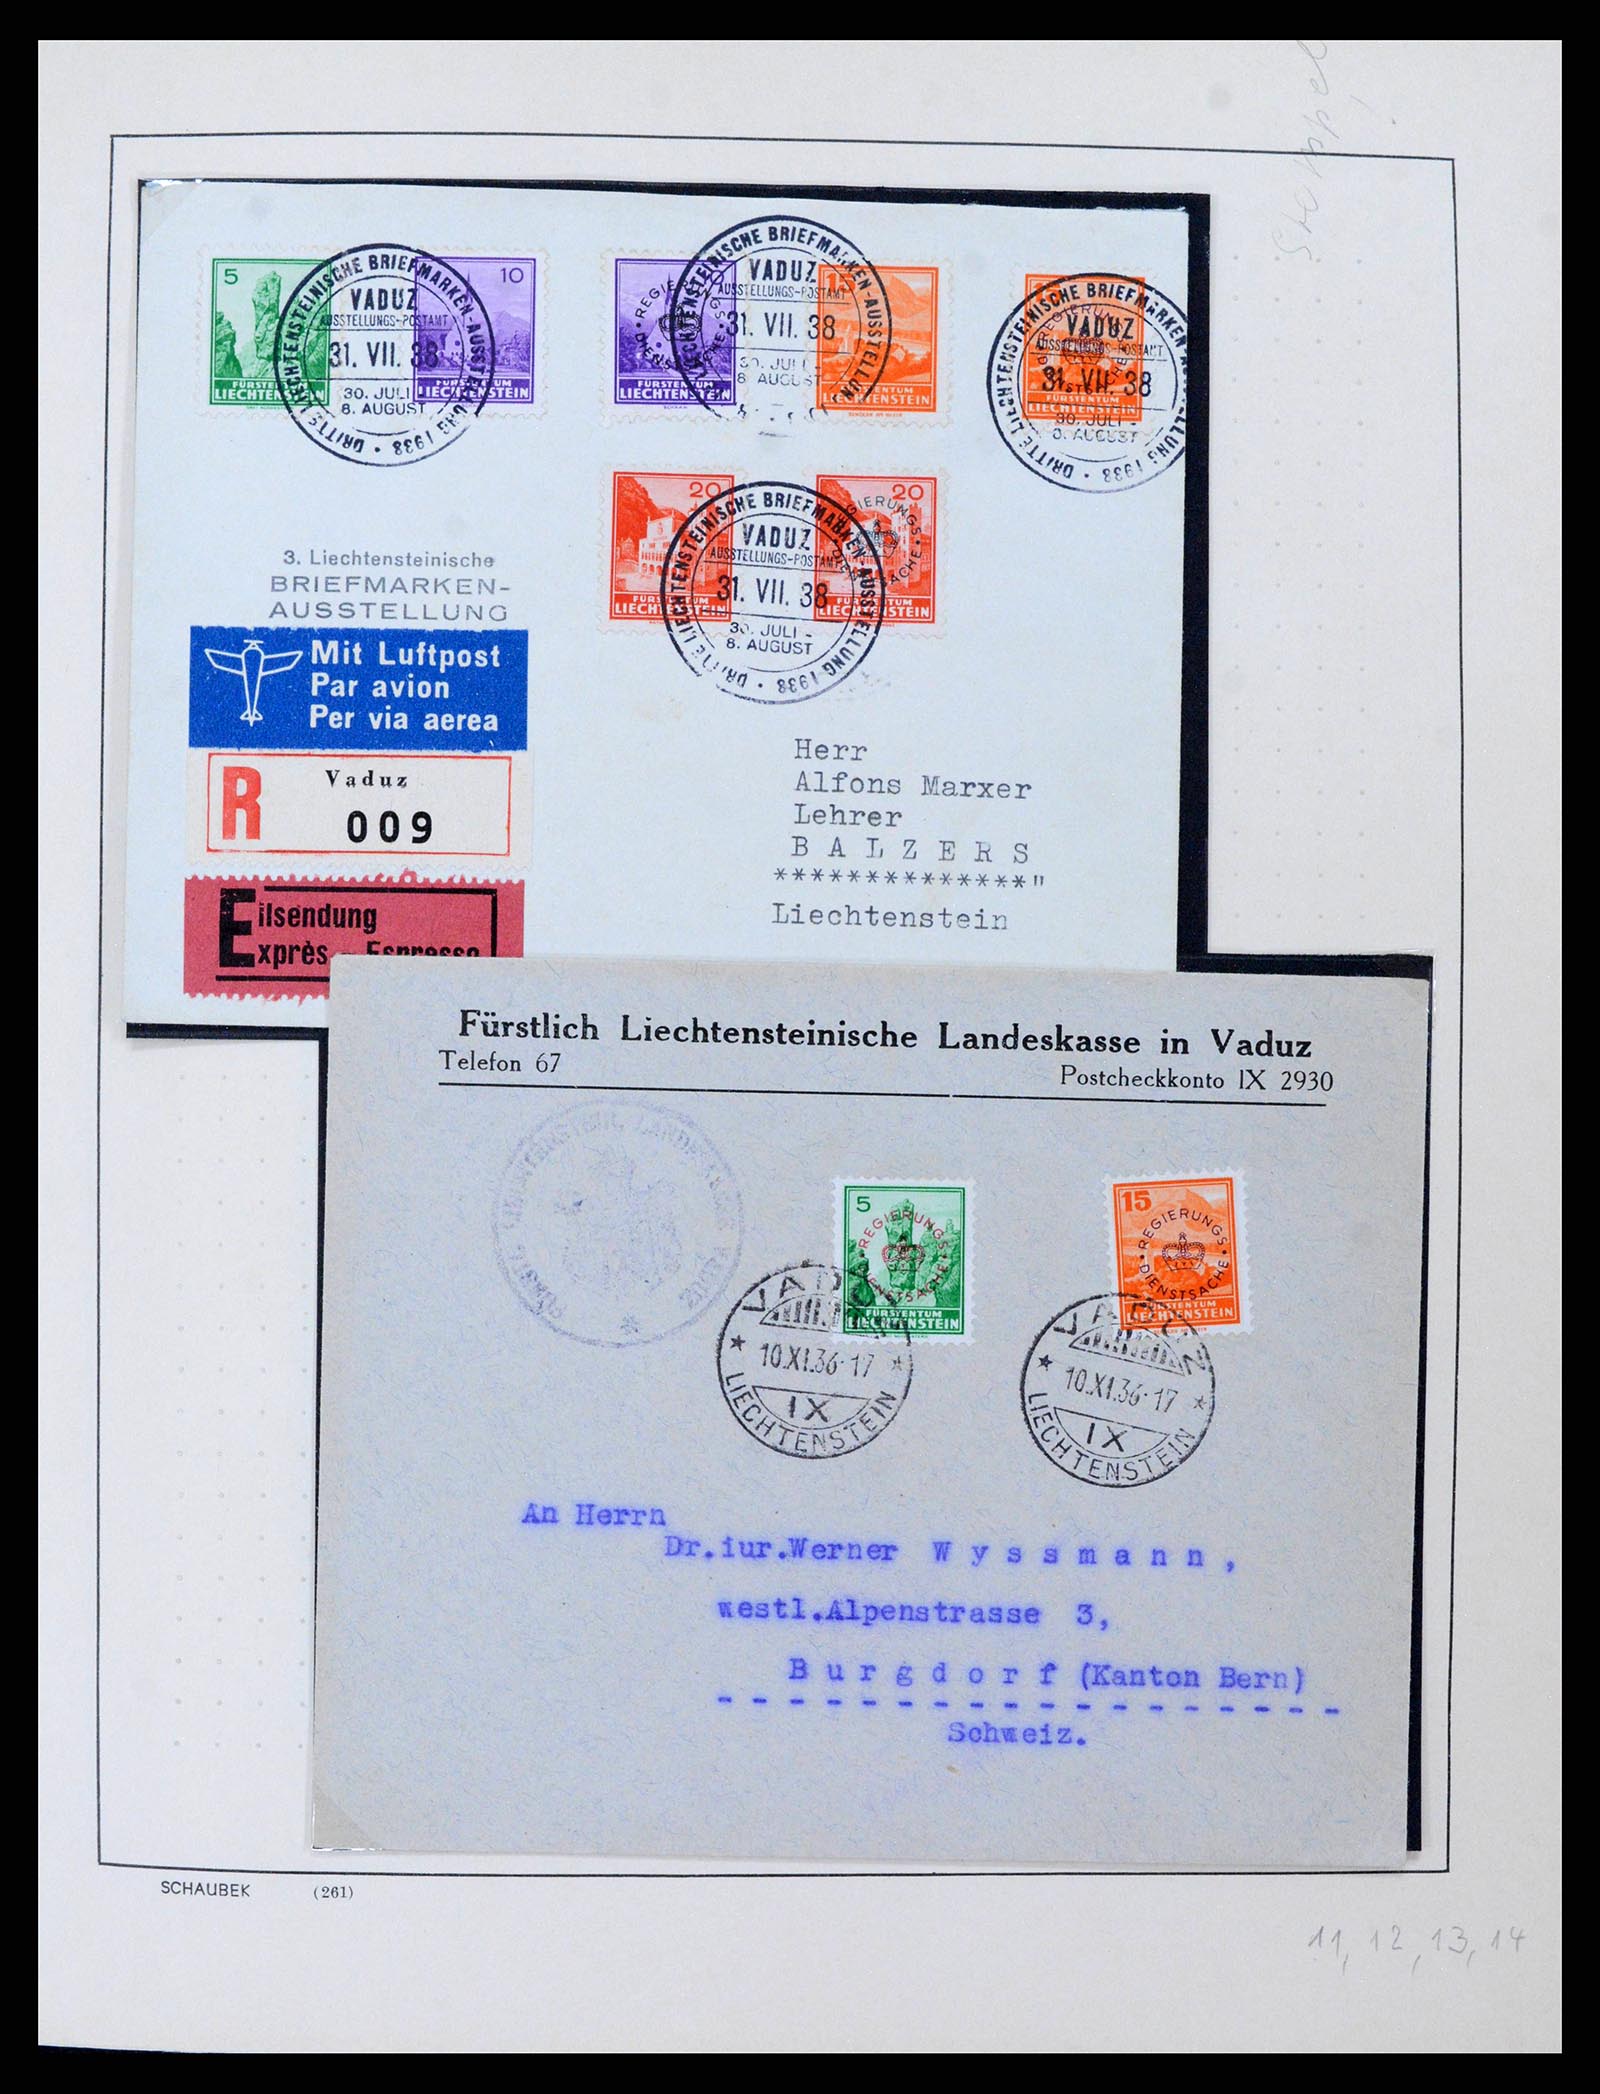 38204 0011 - Stamp collection 38204 Liechtenstein service covers 1932-1989.